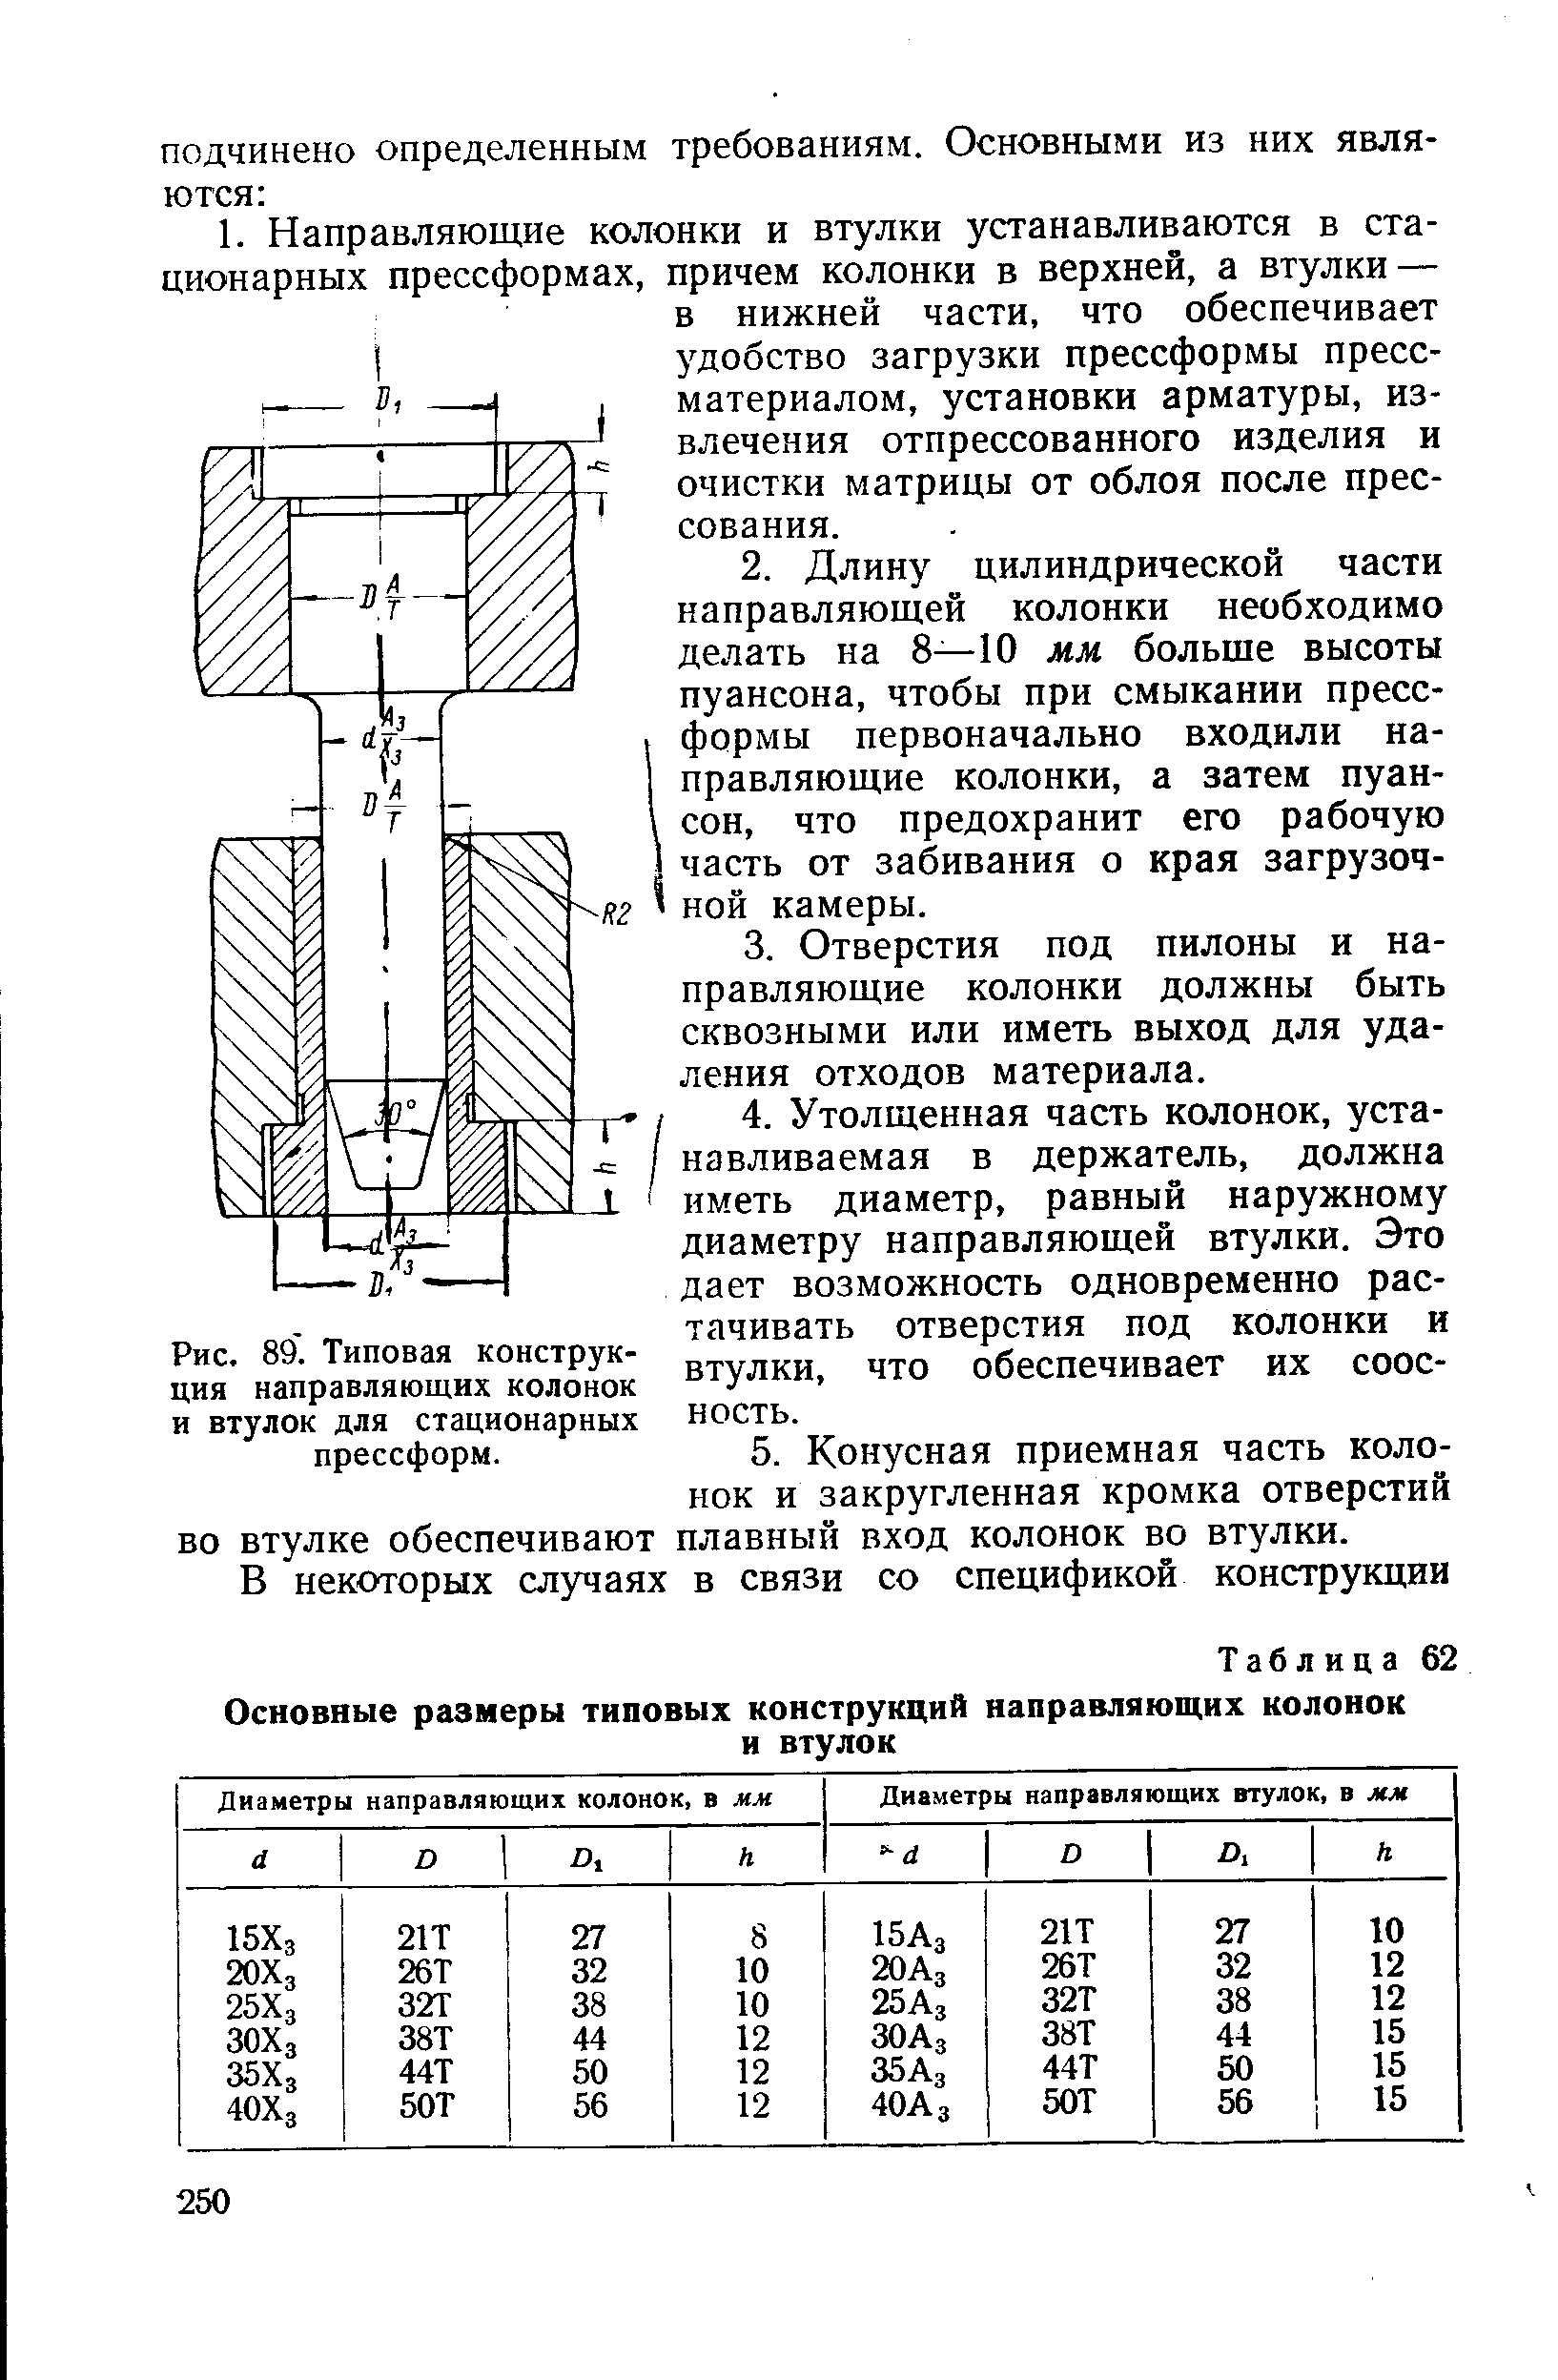 Рис. 89. Типовая конструкция направляющих колонок и втулок для стационарных прессформ.
